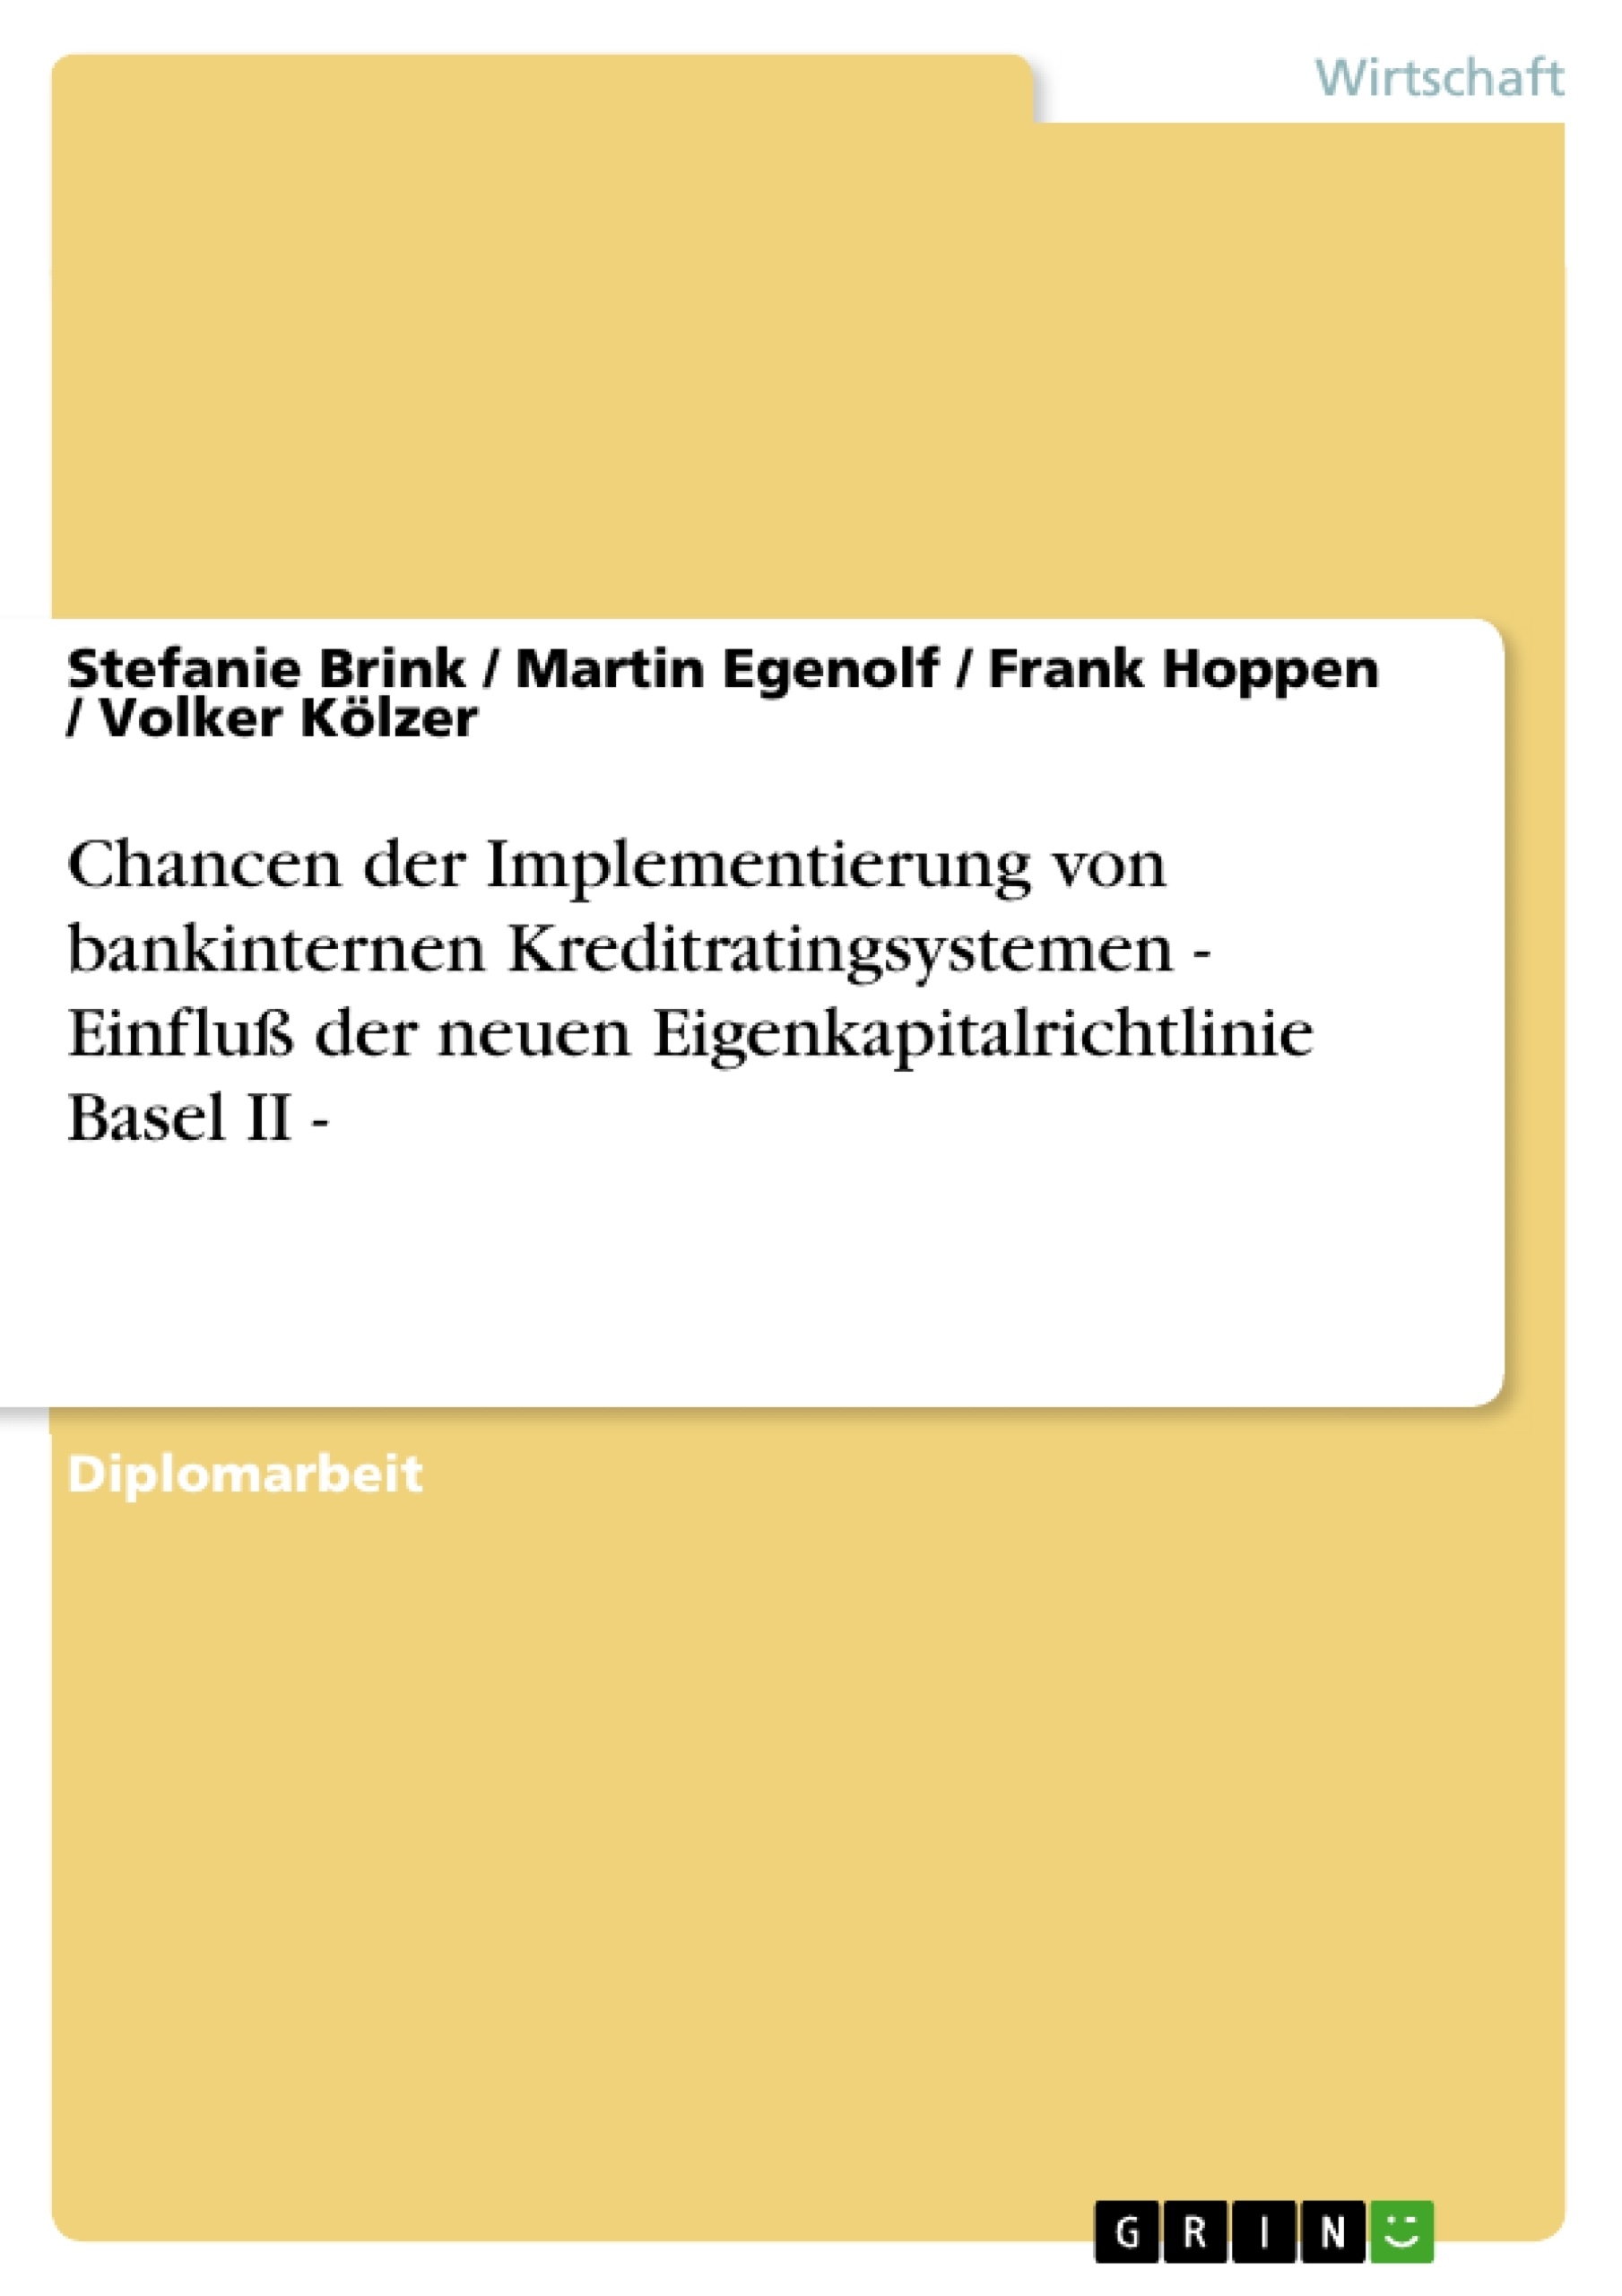 Titel: Chancen der Implementierung von bankinternen Kreditratingsystemen - Einfluß der neuen Eigenkapitalrichtlinie Basel II -